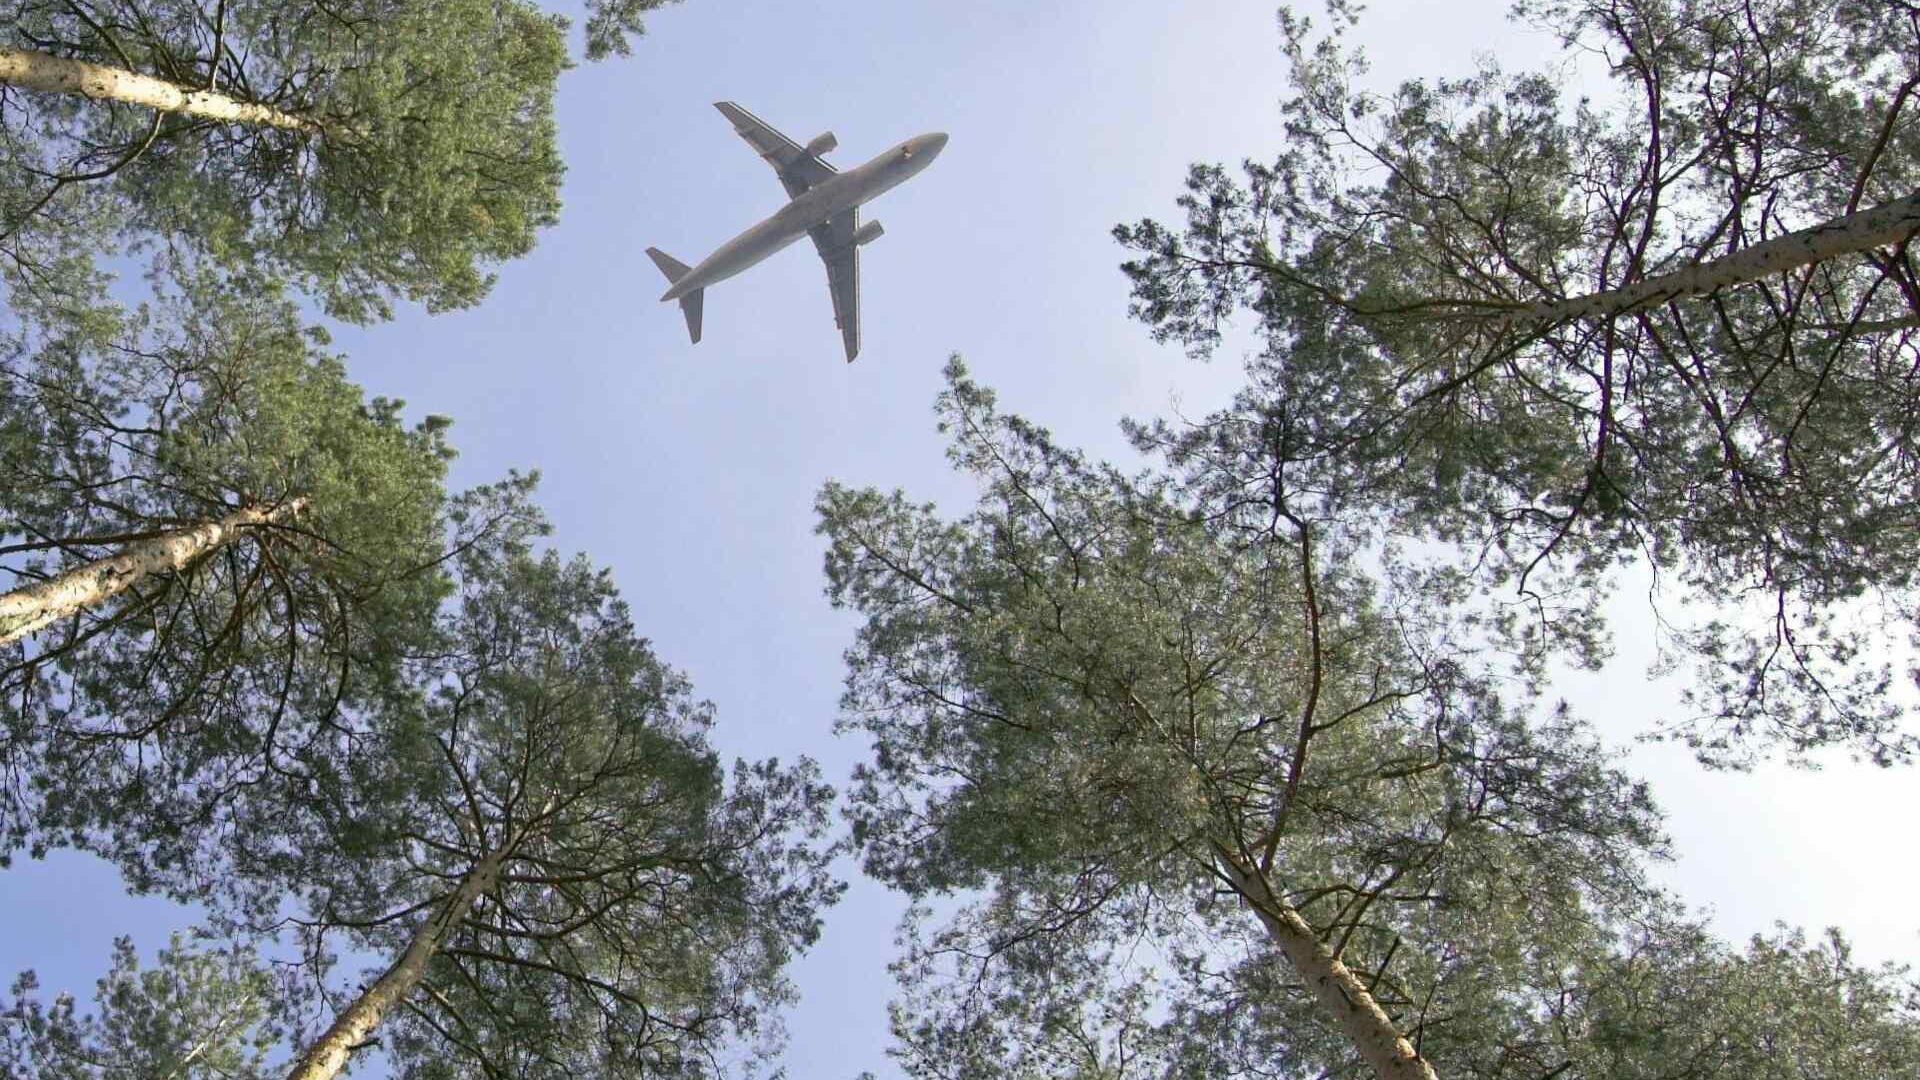 स्विस वायु सेना: विमानन और इसके द्वारा उपयोग किए जाने वाले ईंधन जलवायु परिवर्तन से निपटने में महत्वपूर्ण योगदान दे सकते हैं